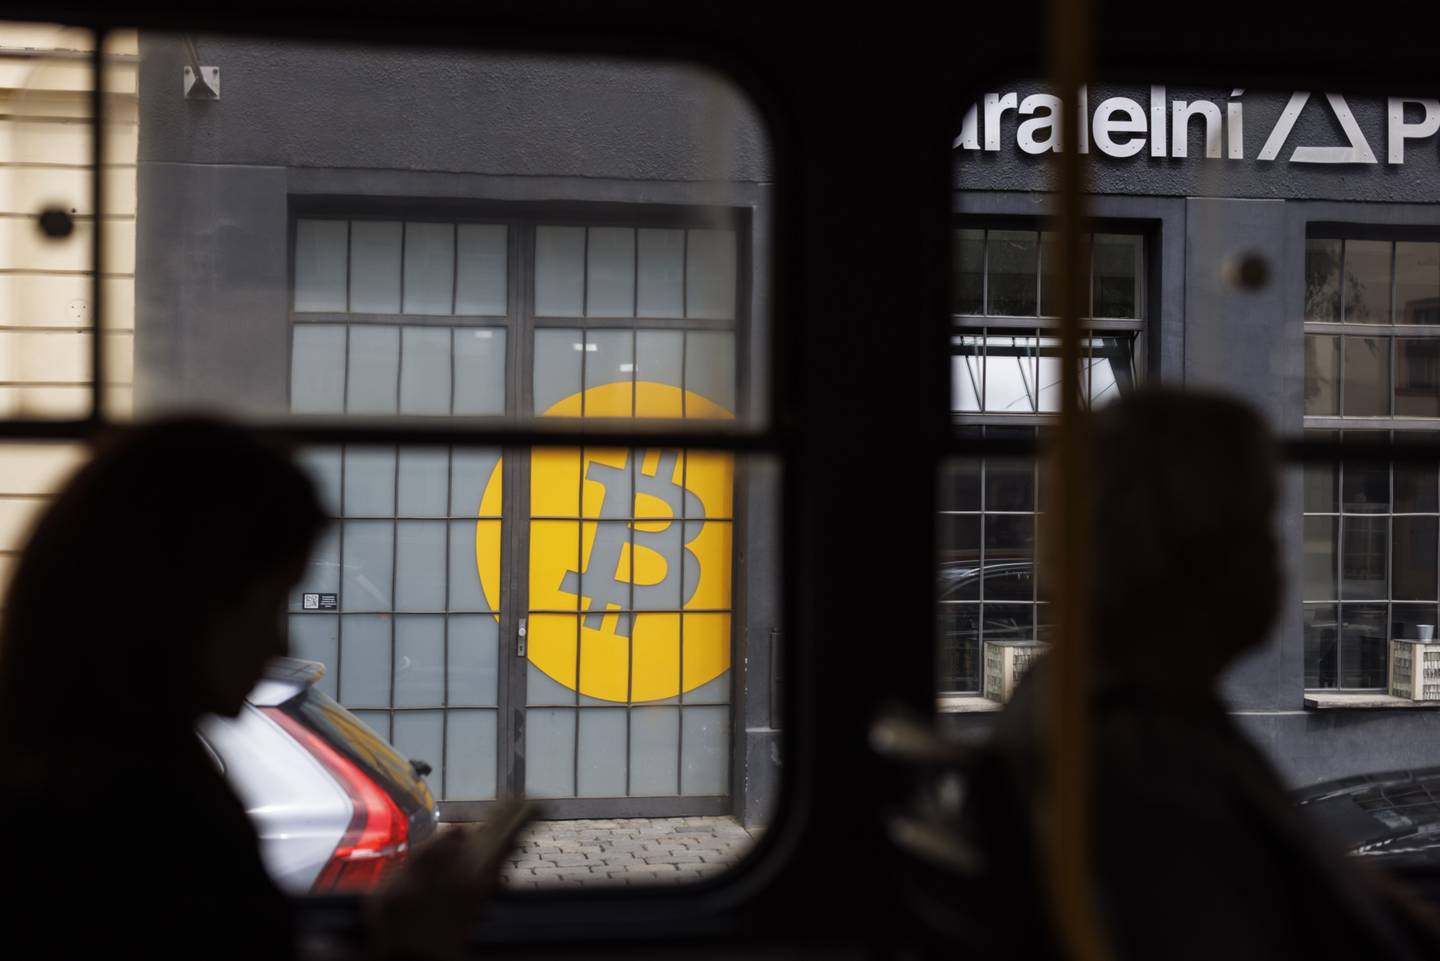 Pasajeros en un tren pasasn un logo de bitcoin en la puertas de Paralelni Polis  una organización que combina arte, ciencias sociales y  tecnología moderna en Praga, República Chea el marte 17 de mayo. Fotógrafo: Milan Jaros/Bloomberg